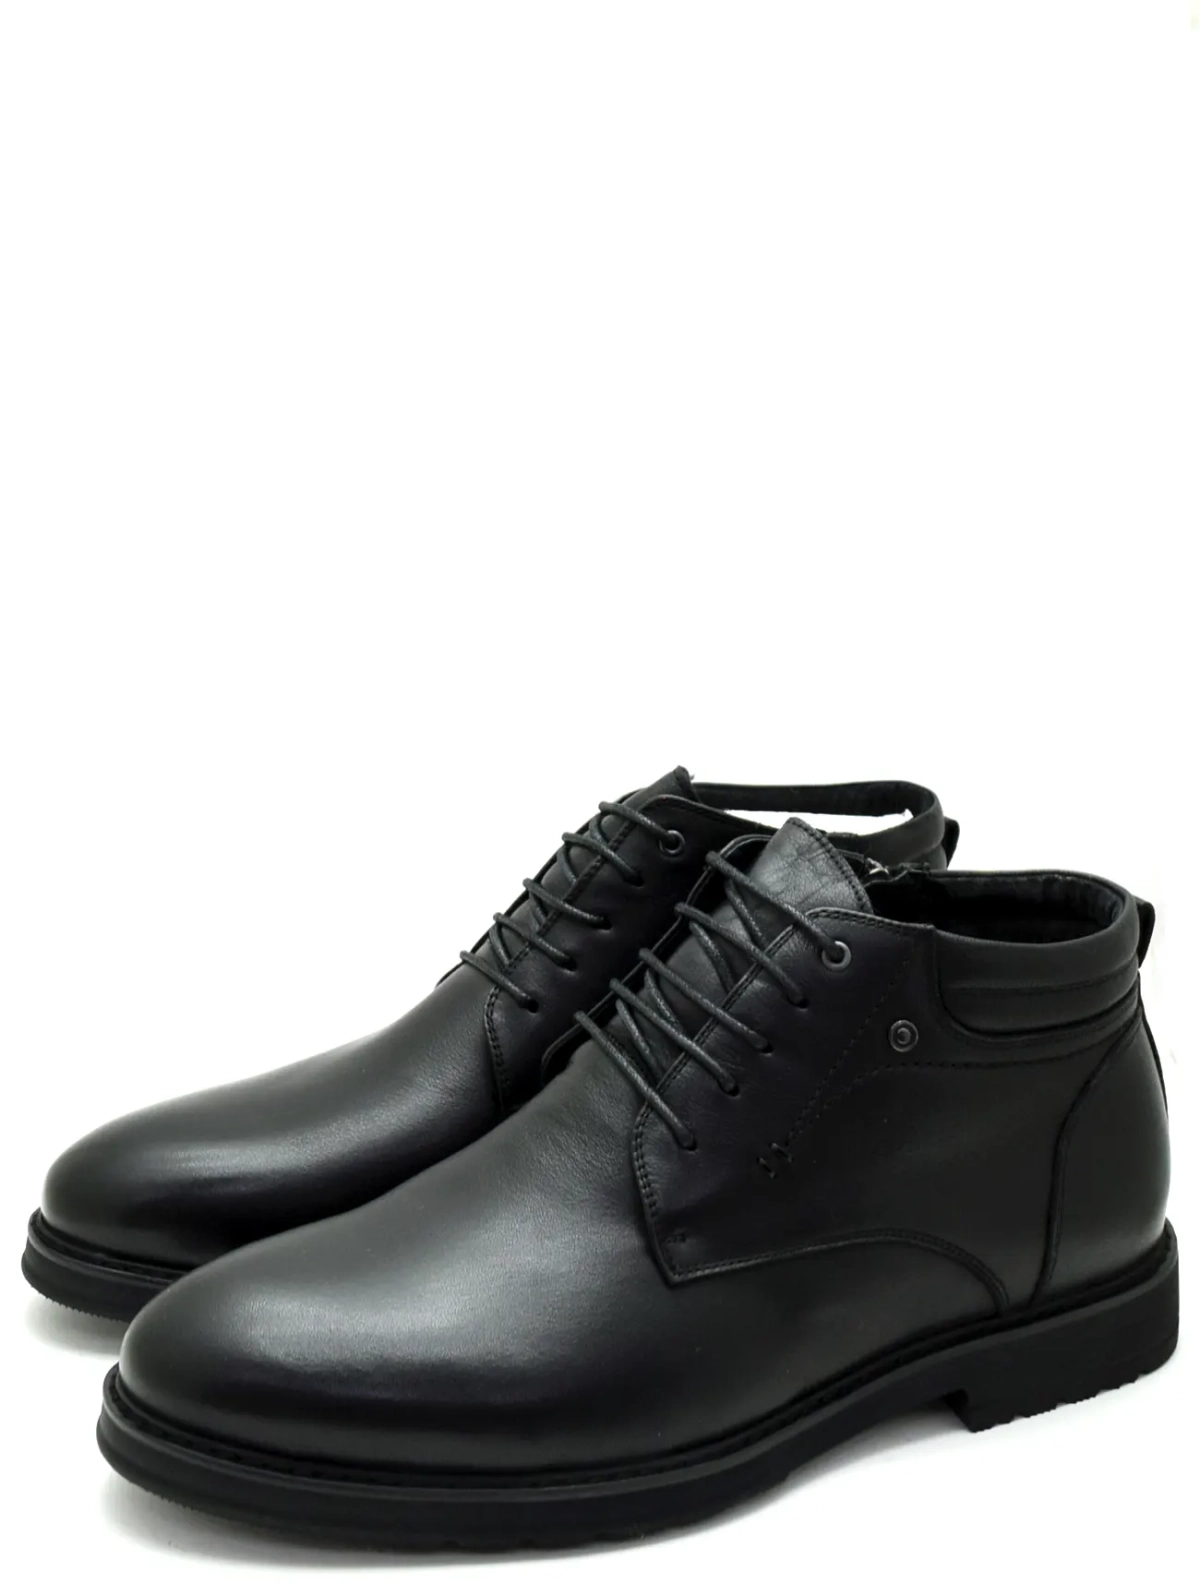 Baden R239-010 мужские ботинки